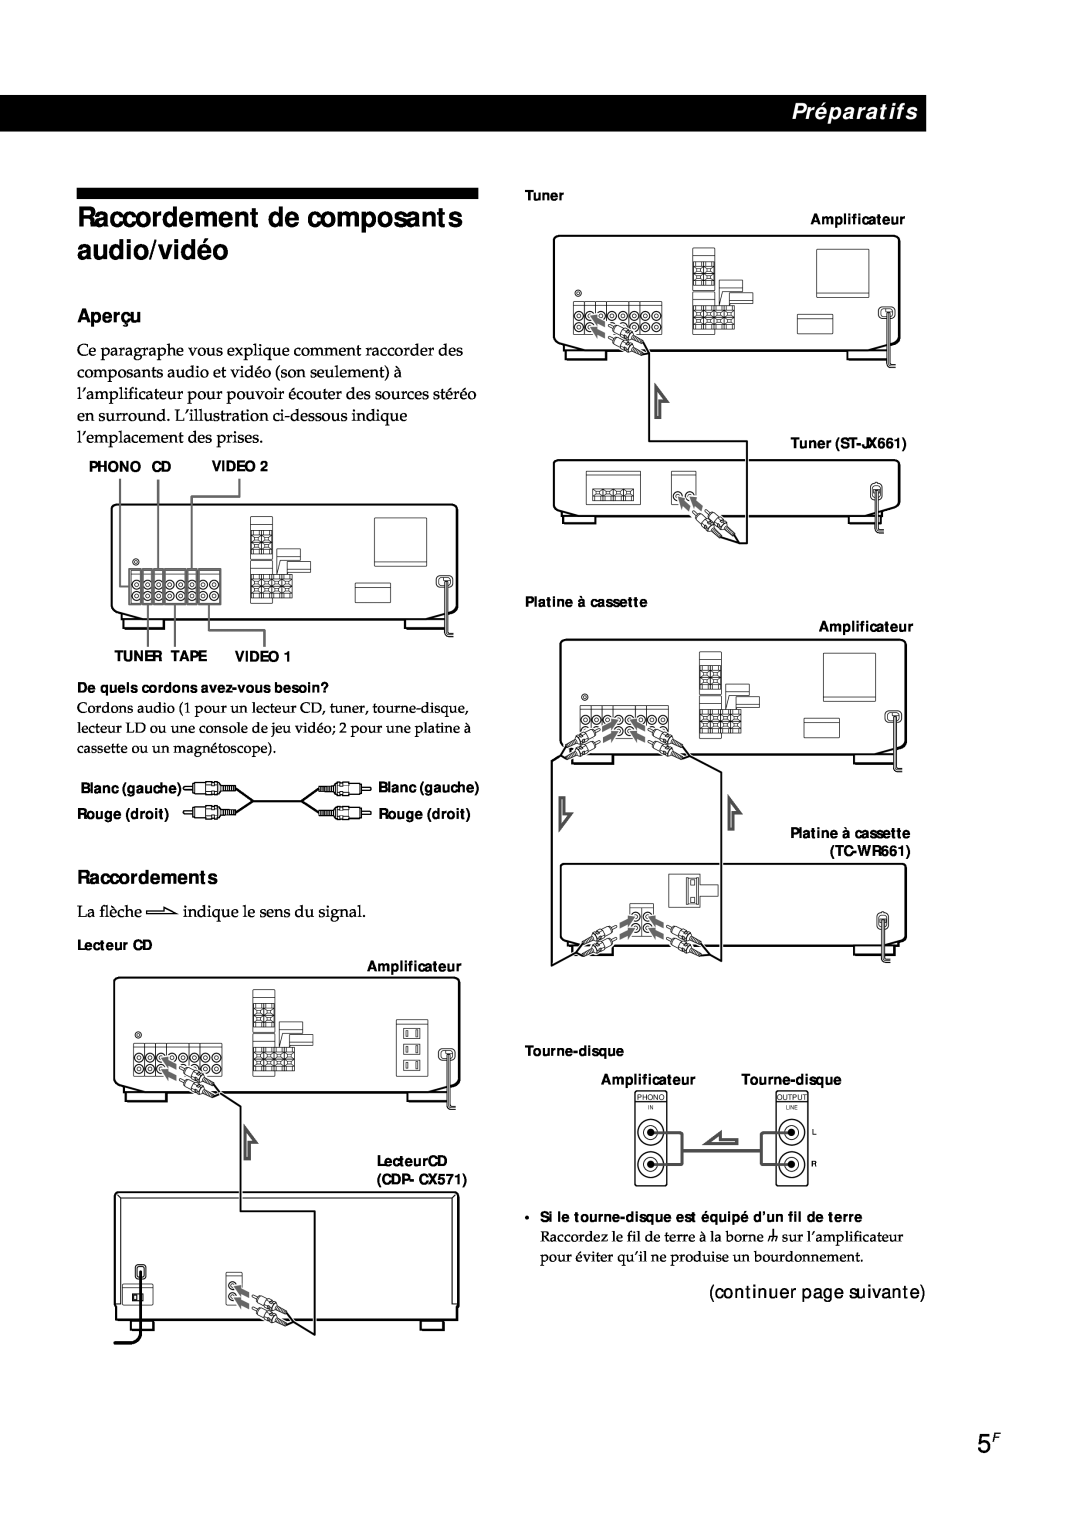 Sony TA-AV561A Raccordement de composants audio/vidéo, Aperçu, Raccordements, continuer page suivante, Platine à cassette 